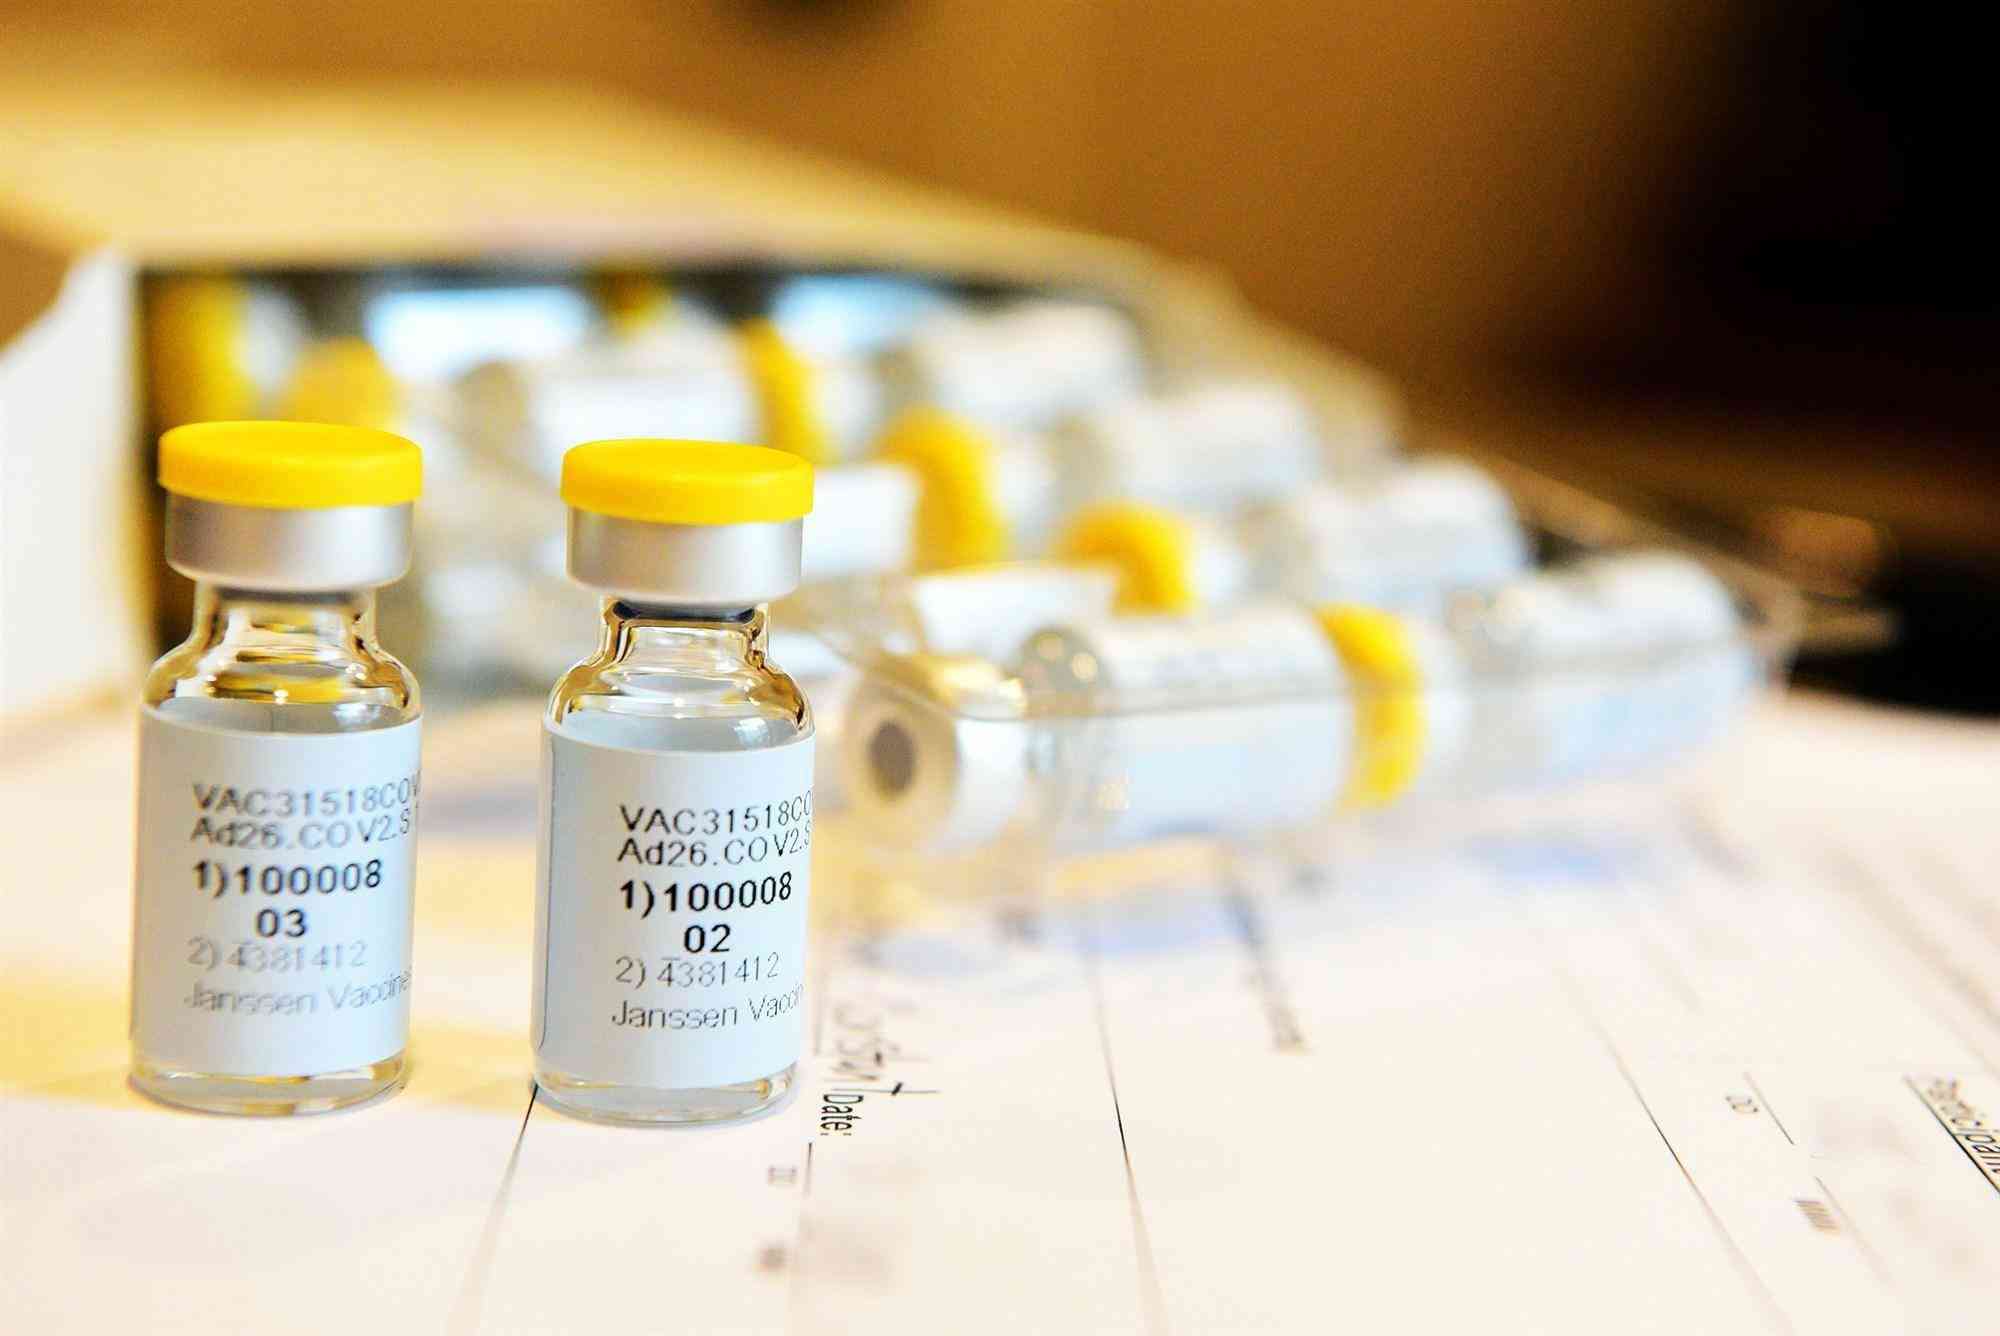 麻风疫苗是用于预防麻疹、风疹的疫苗